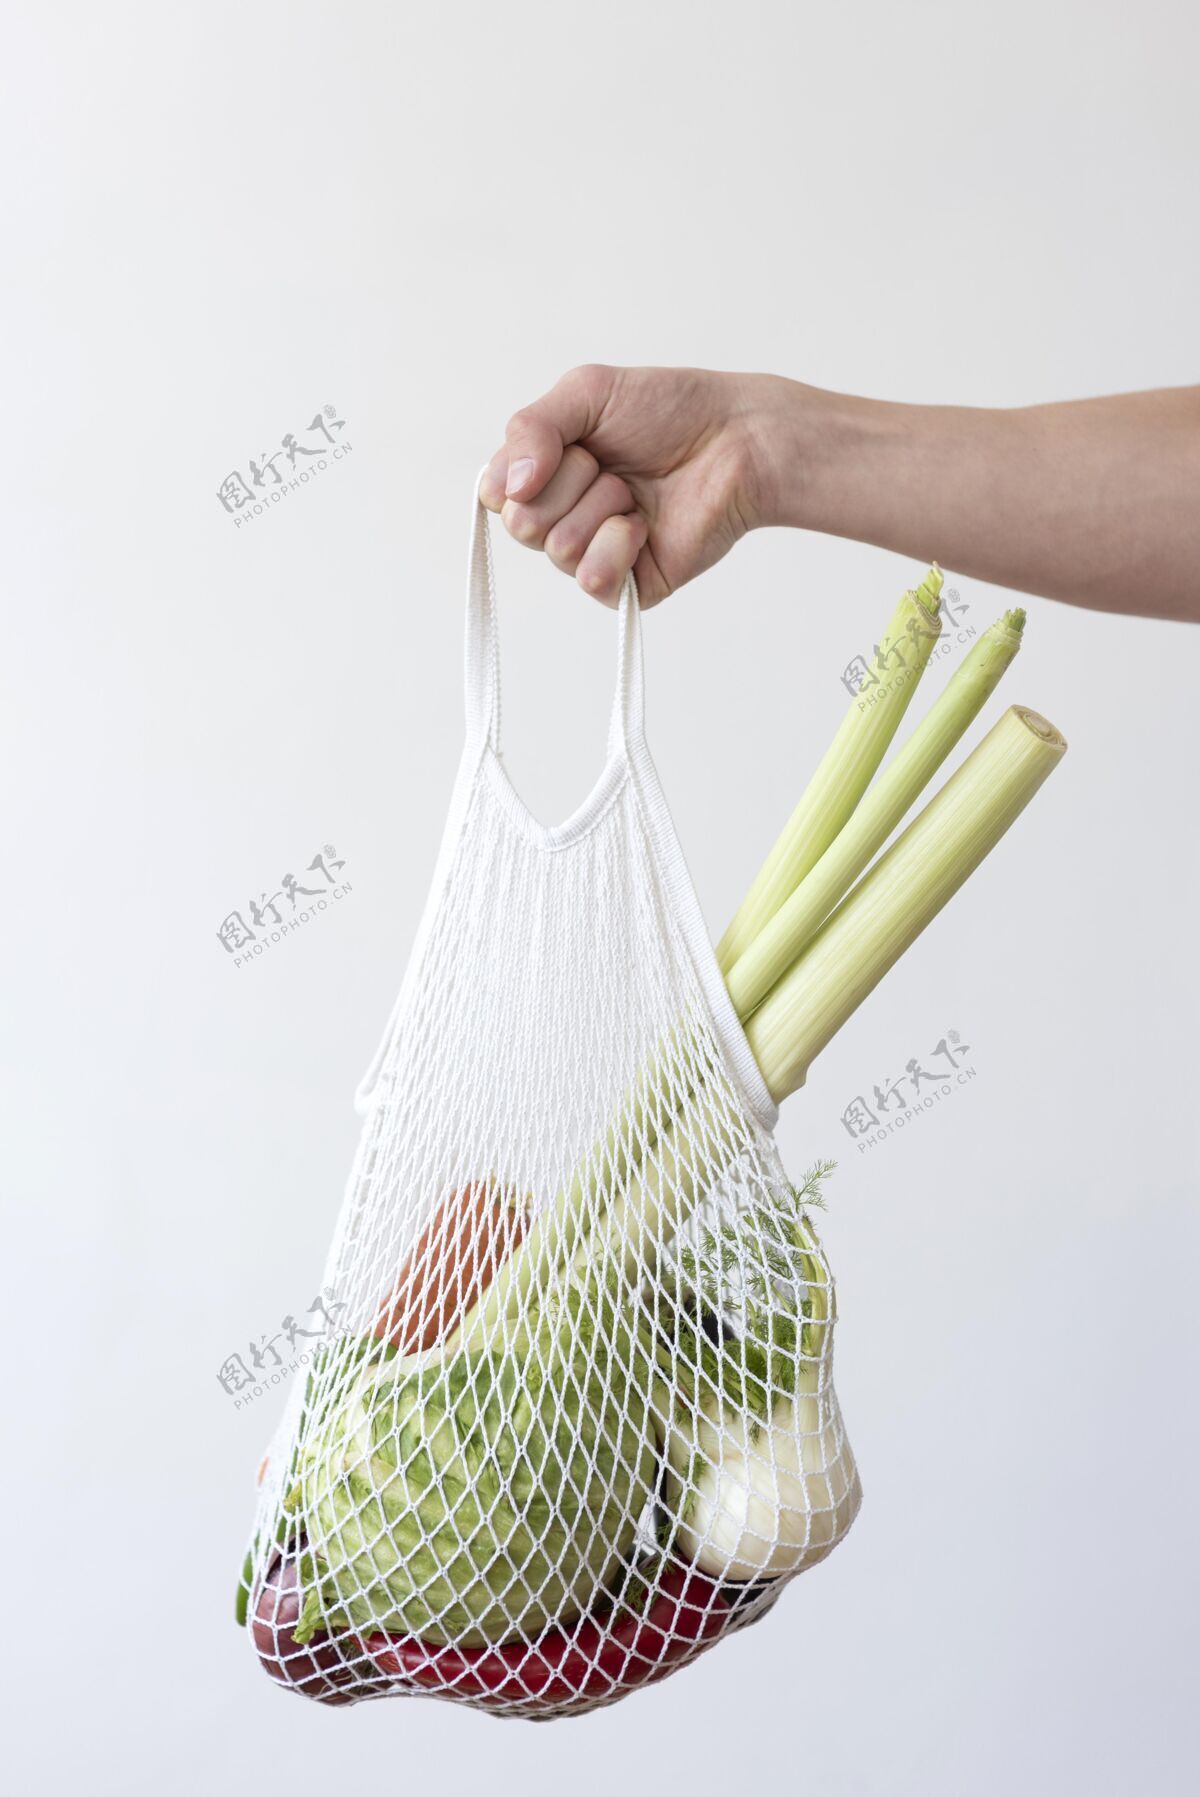 责任把蔬菜放在一个纺织袋里生态循环可持续性